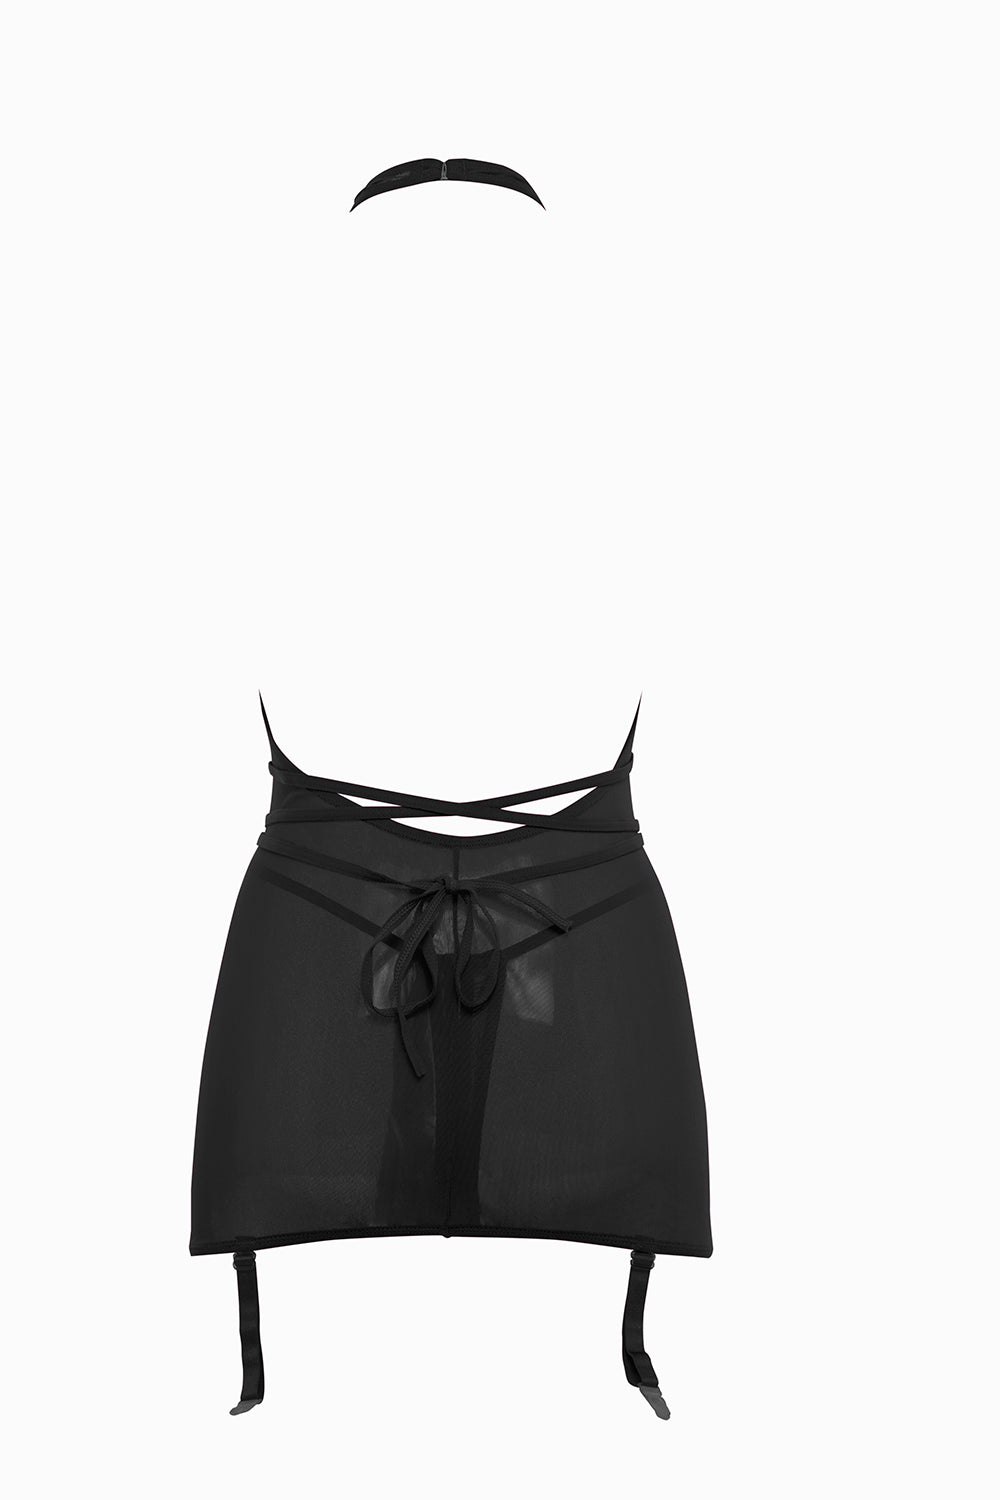 Allure Collection Savannah Sheer Mesh Garter Dress & Open Thong Black